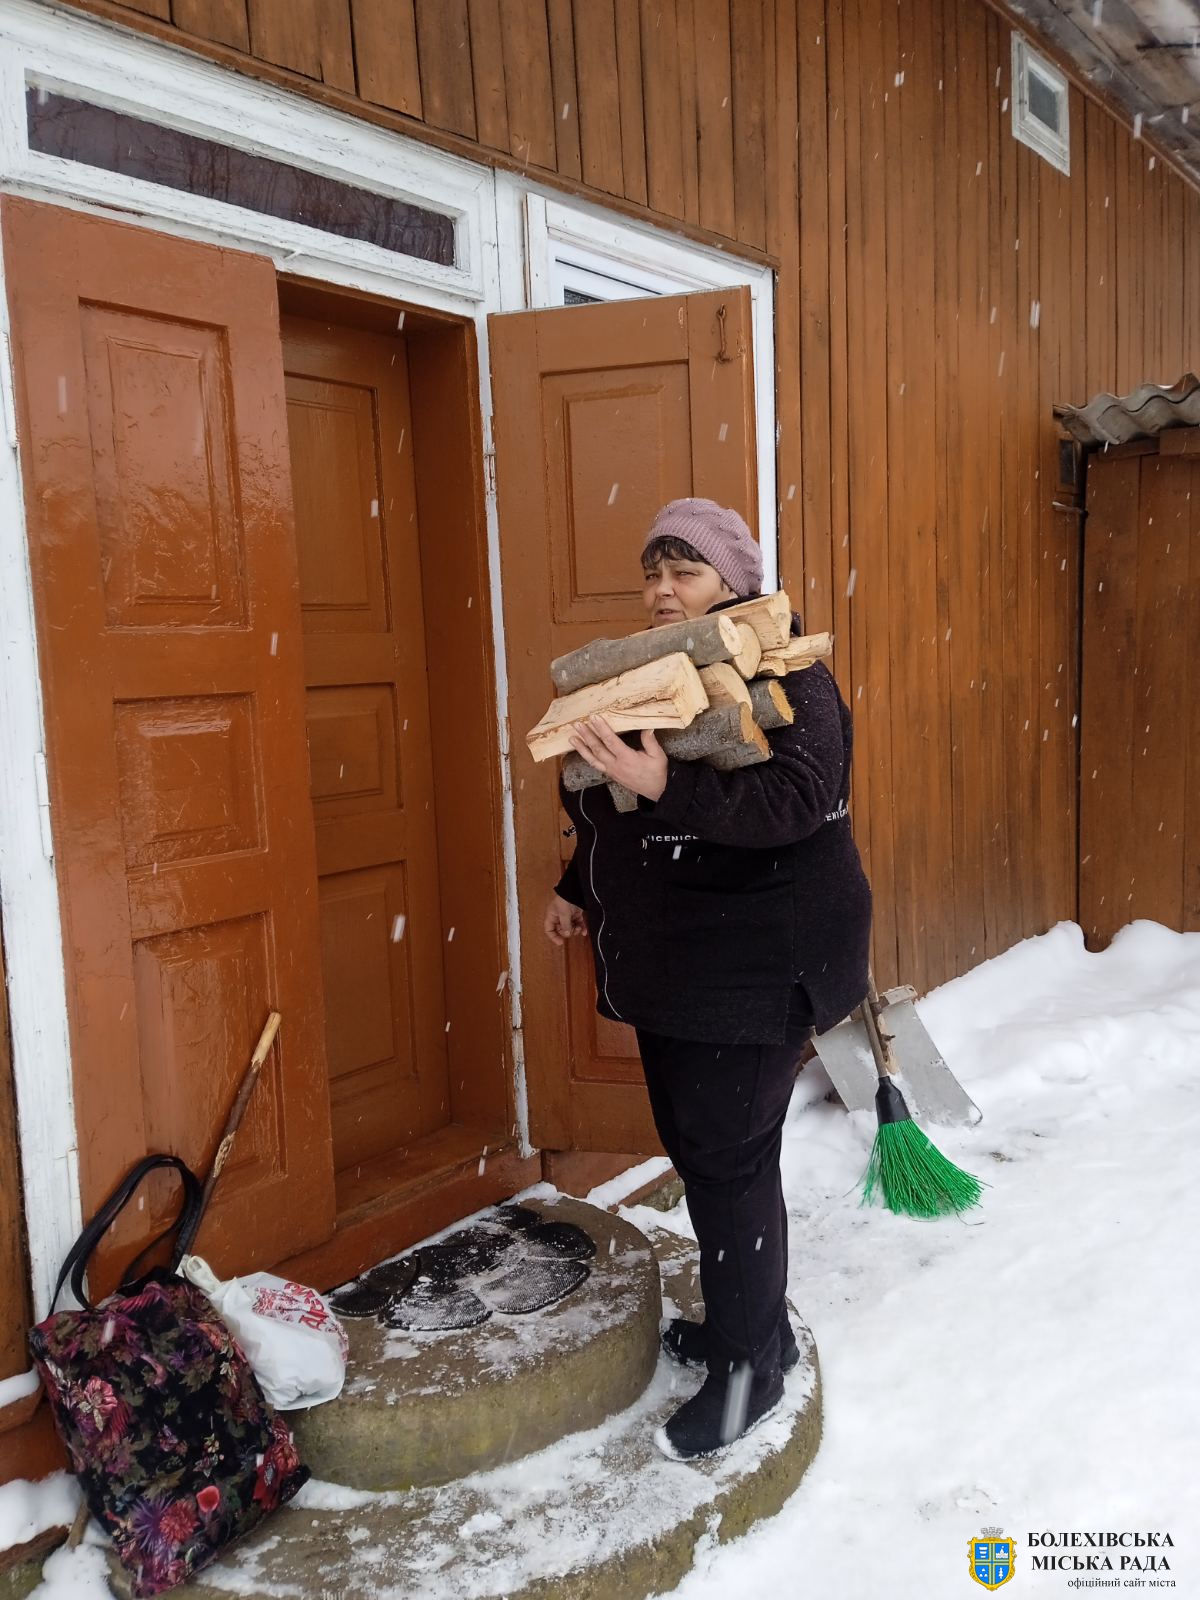 Соціальні робітники територіального центру допомагають одиноким пережити непрості виклики зими